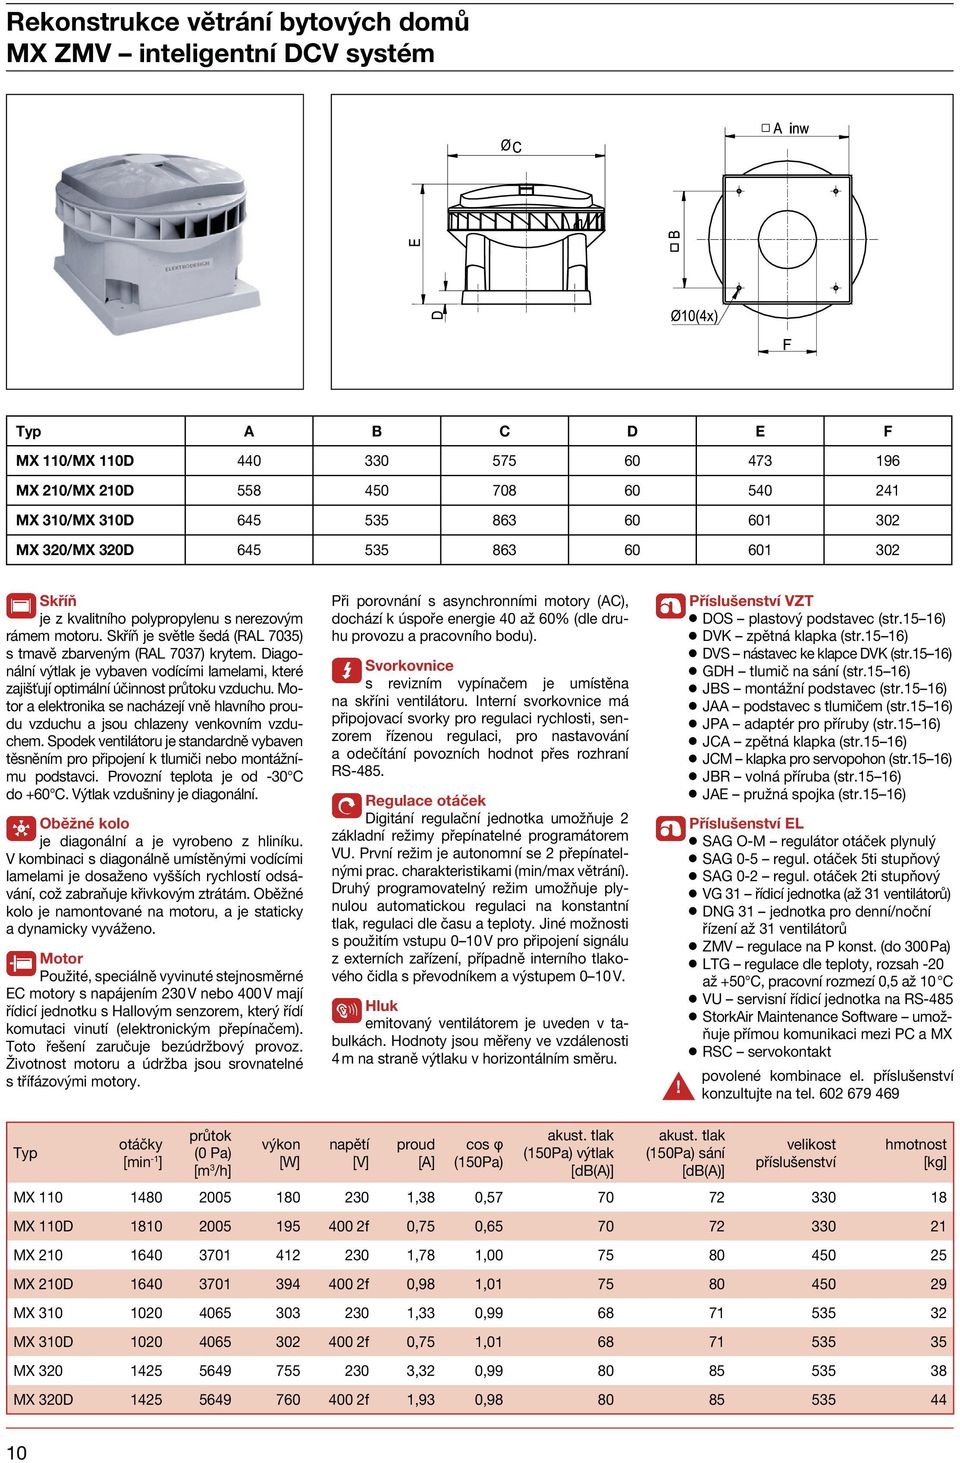 Spodek ventilátoru je standardně vybaven těsněním pro připojení k tlumiči nebo montážnímu podstavci. Provozní teplota je od - C do + C. Výtlak vzdušniny je diagonální.